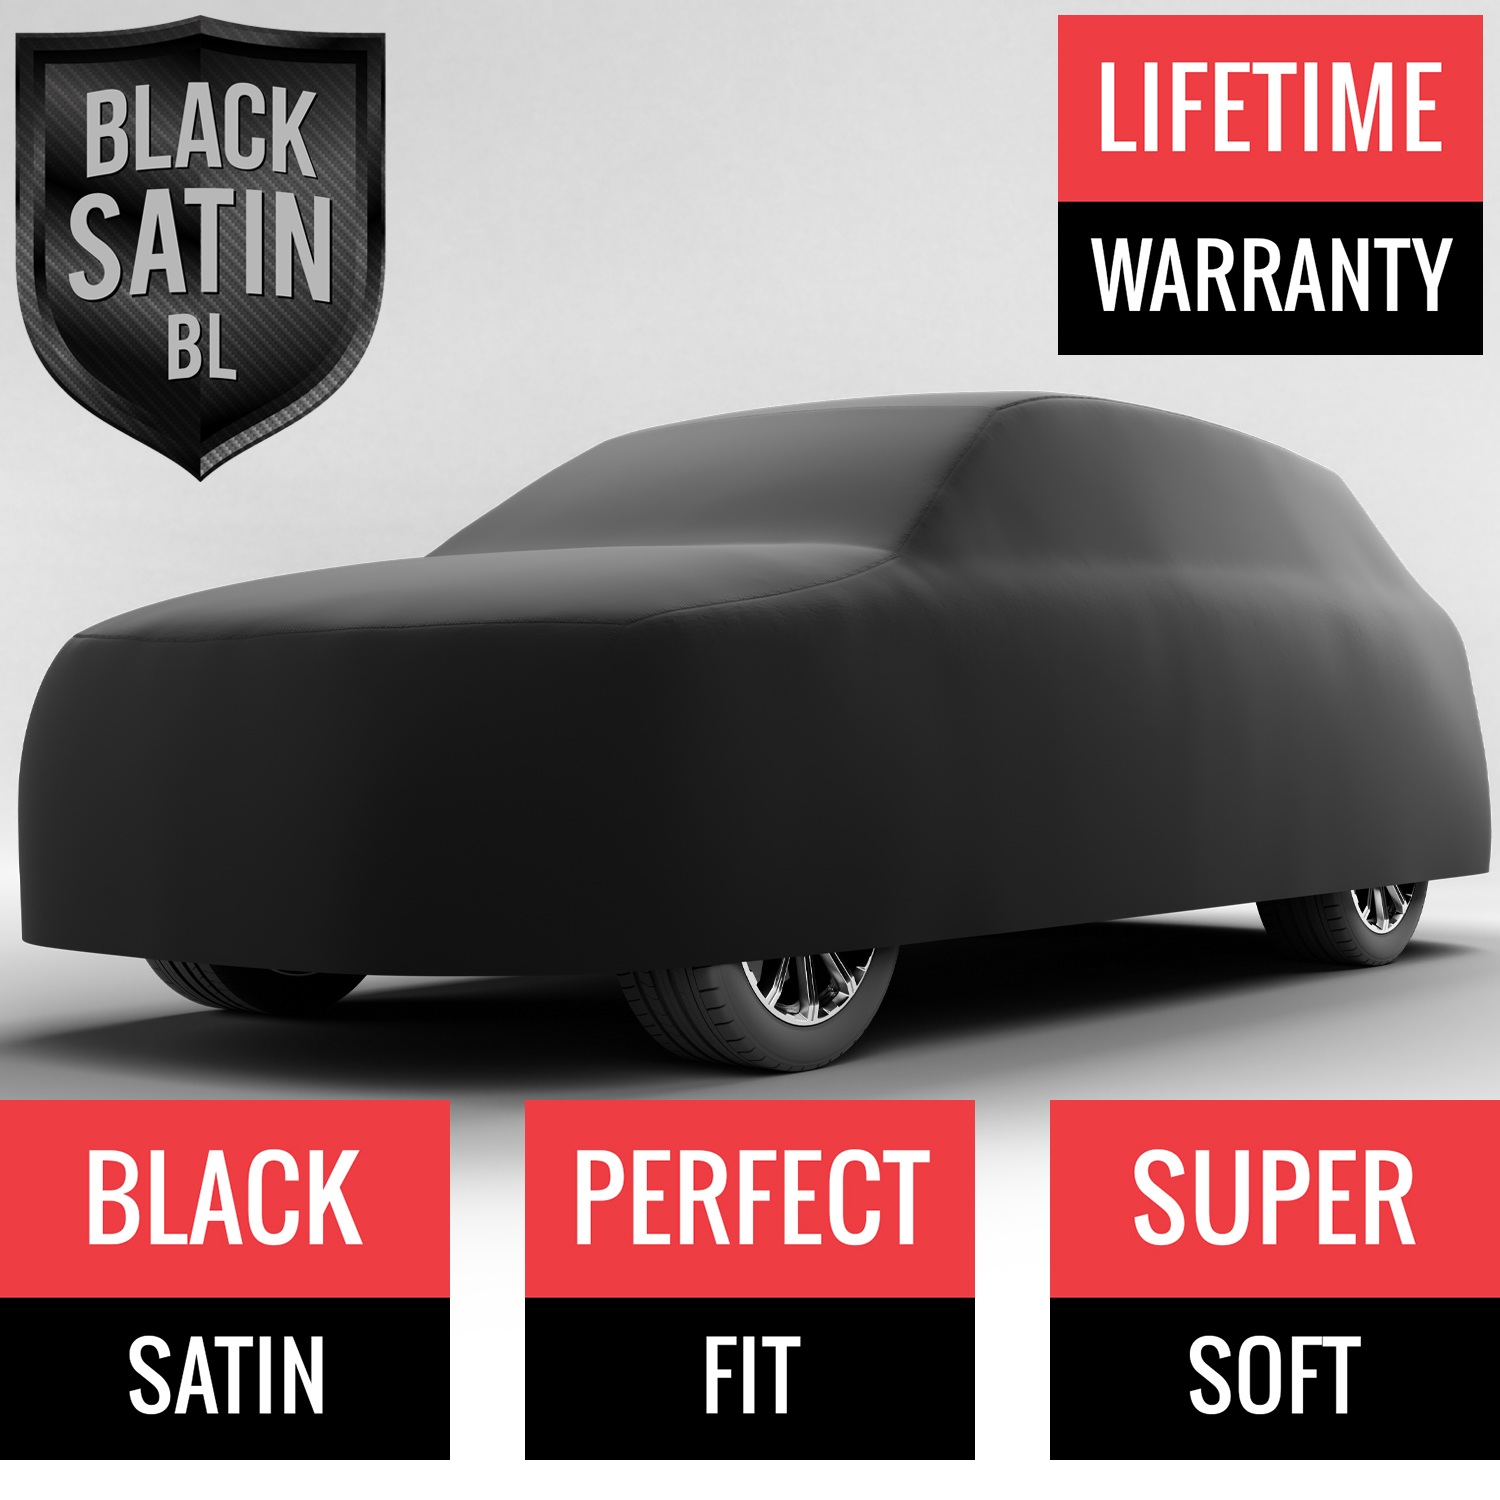 Black Satin BL - Black Car Cover for Mazda CX-9 2009 SUV 4-Door